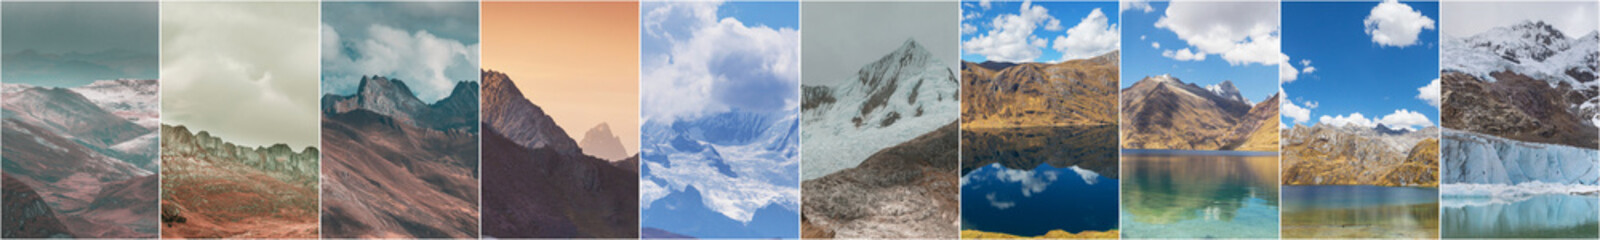 Cordillera collage